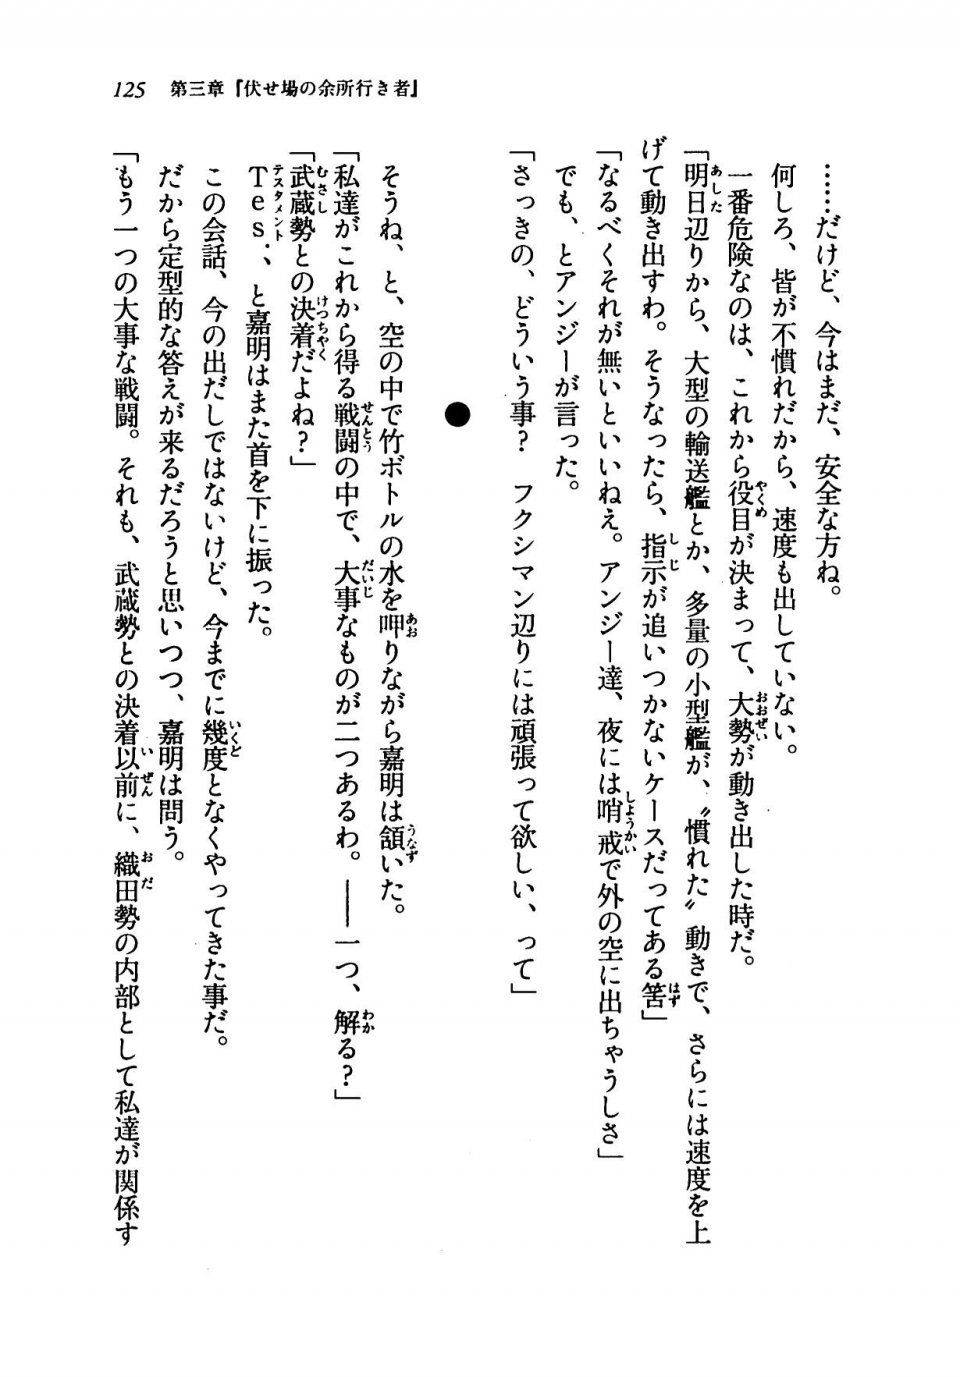 Kyoukai Senjou no Horizon LN Vol 19(8A) - Photo #125